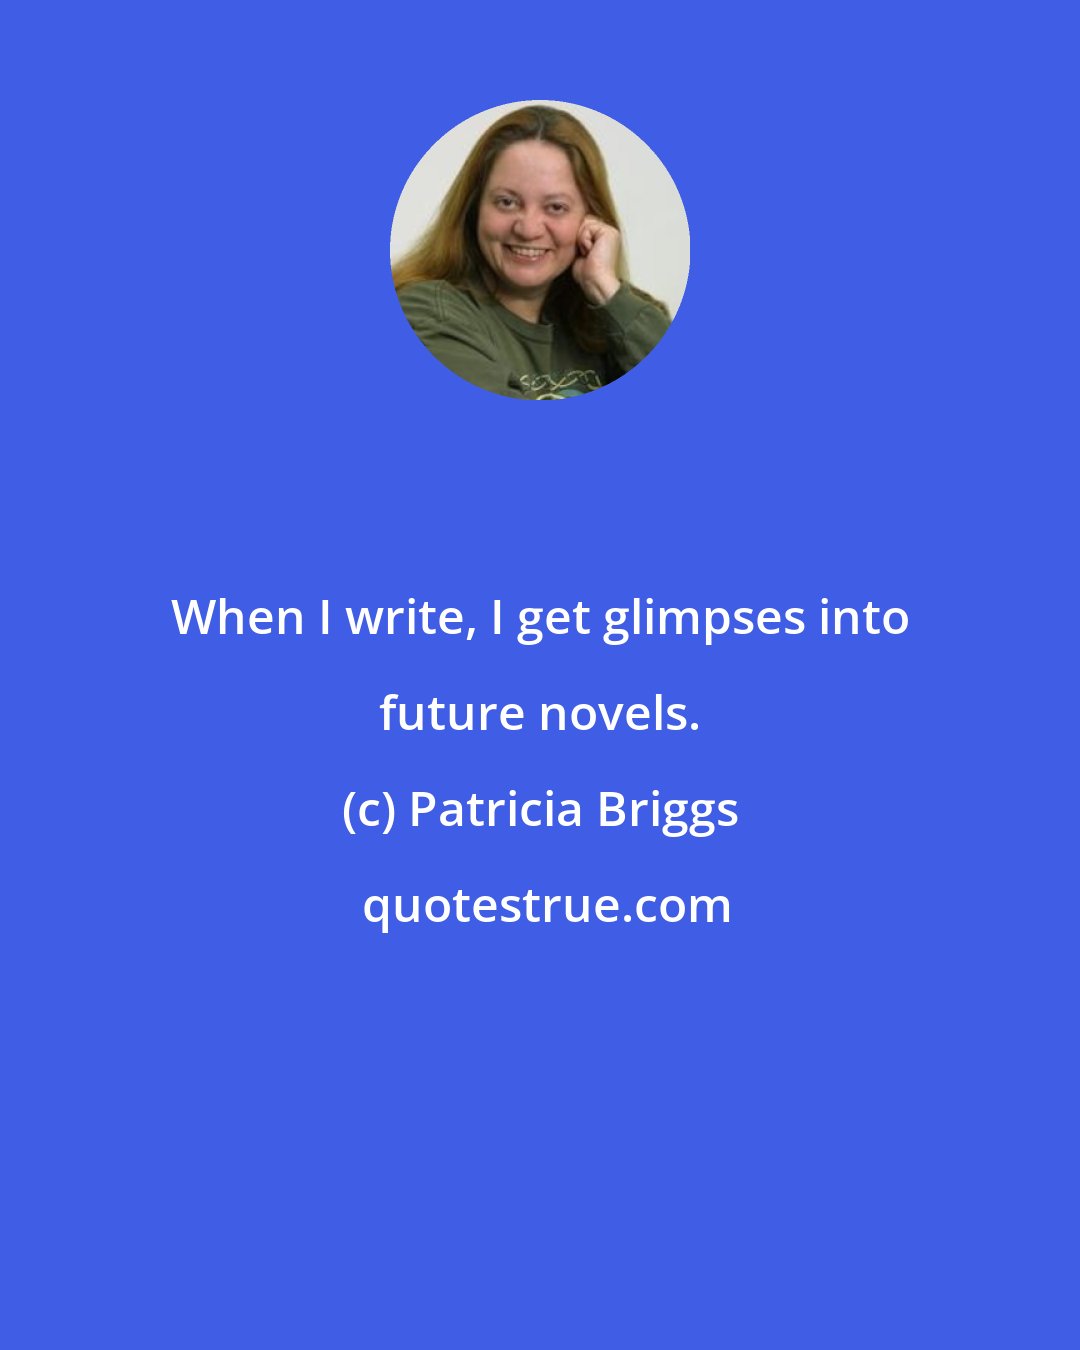 Patricia Briggs: When I write, I get glimpses into future novels.